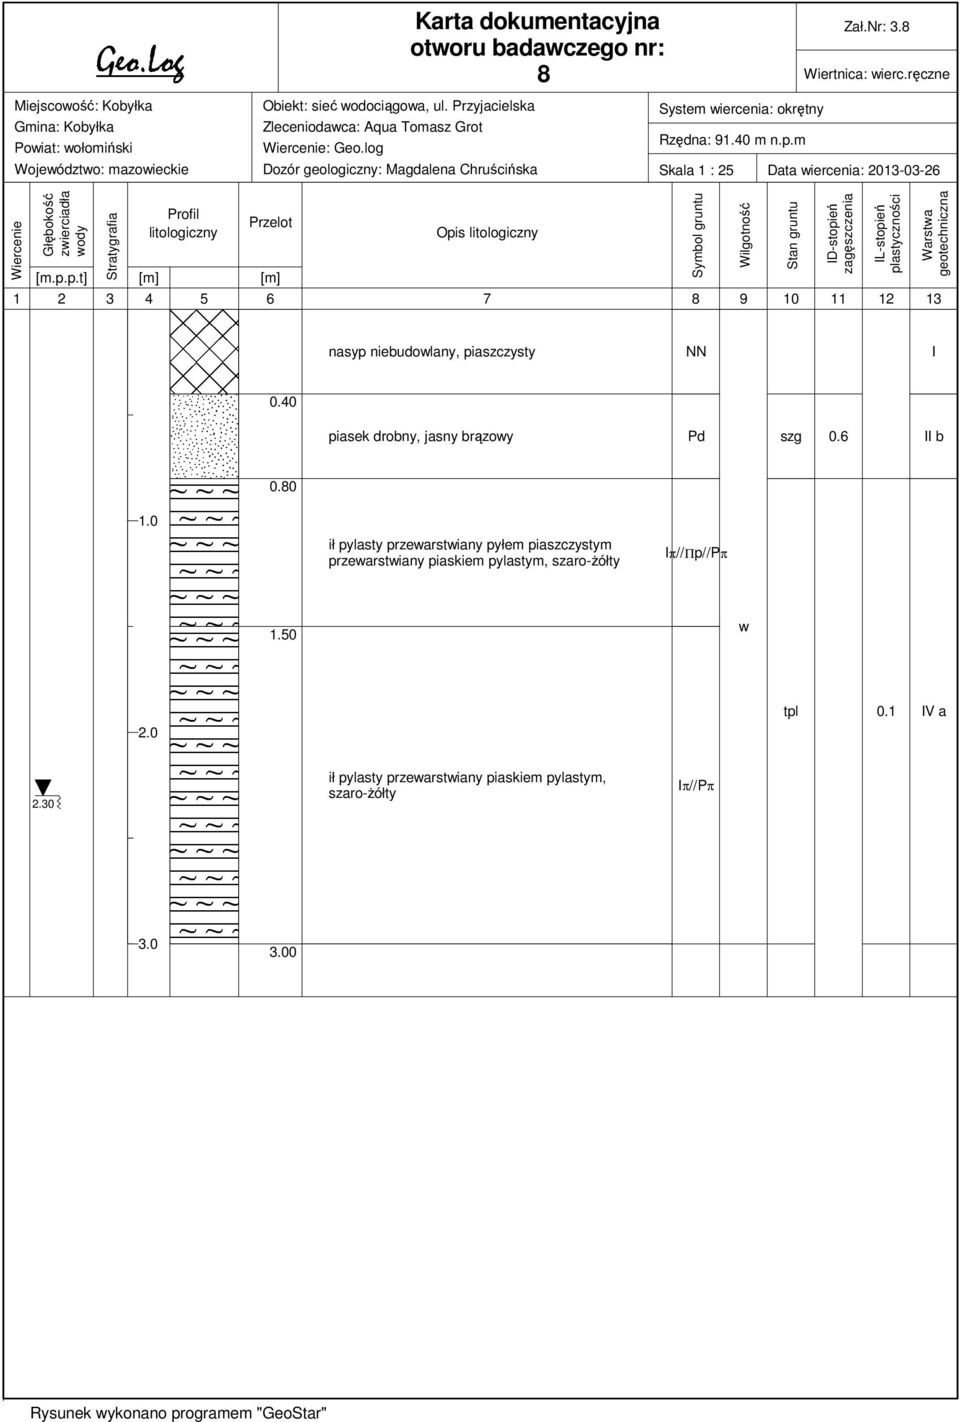 m Skala 1 : 25 Data iercenia: 2013-03-26 Wiercenie Głębokość zierciadła ody Stratygrafia Profil litologiczny Przelot [m.p.